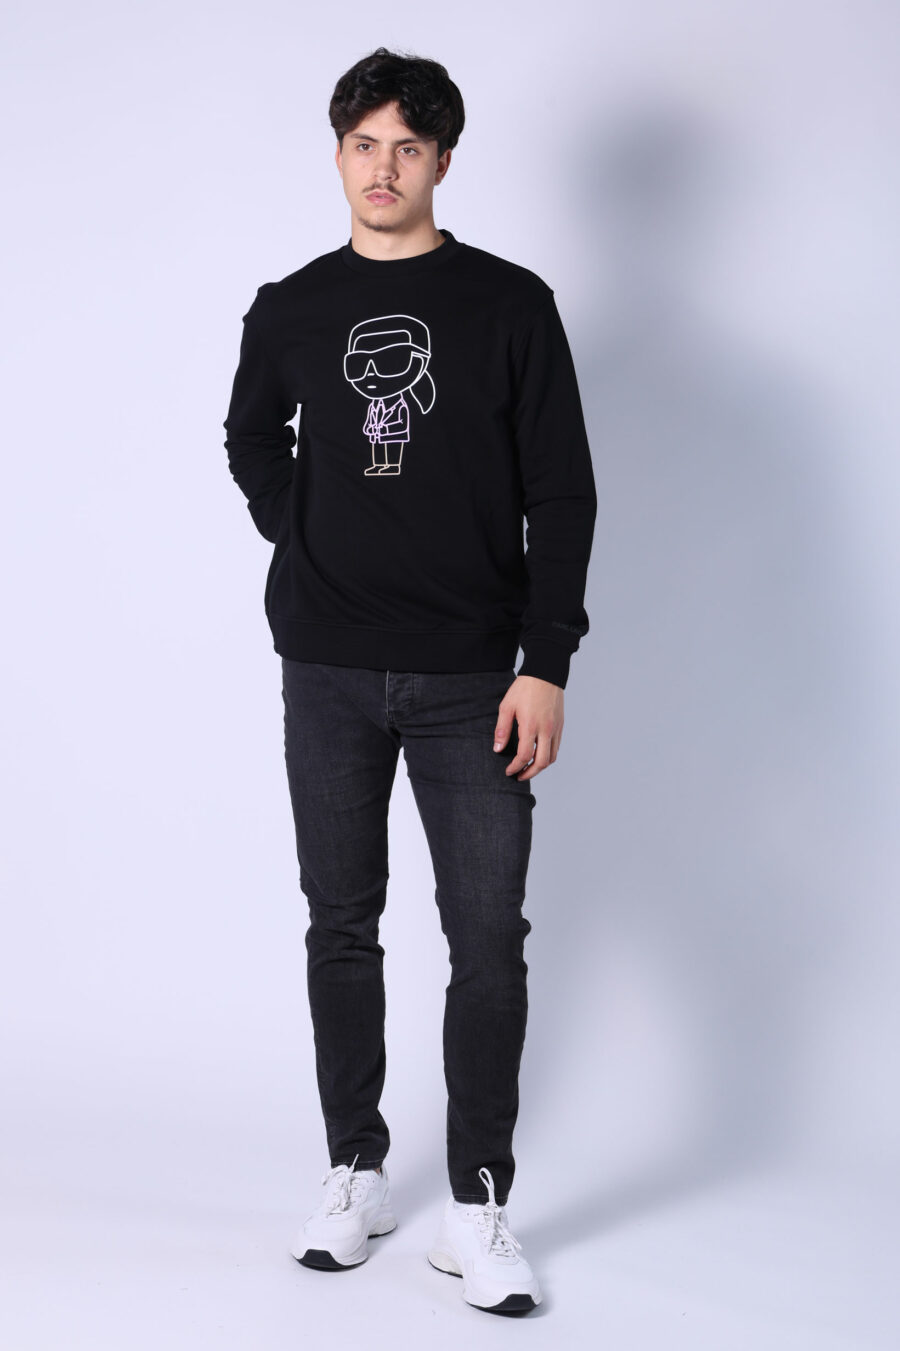 Schwarzes Sweatshirt mit mehrfarbigem "karl silhouette" maxilogue - Untitled Catalog 05743